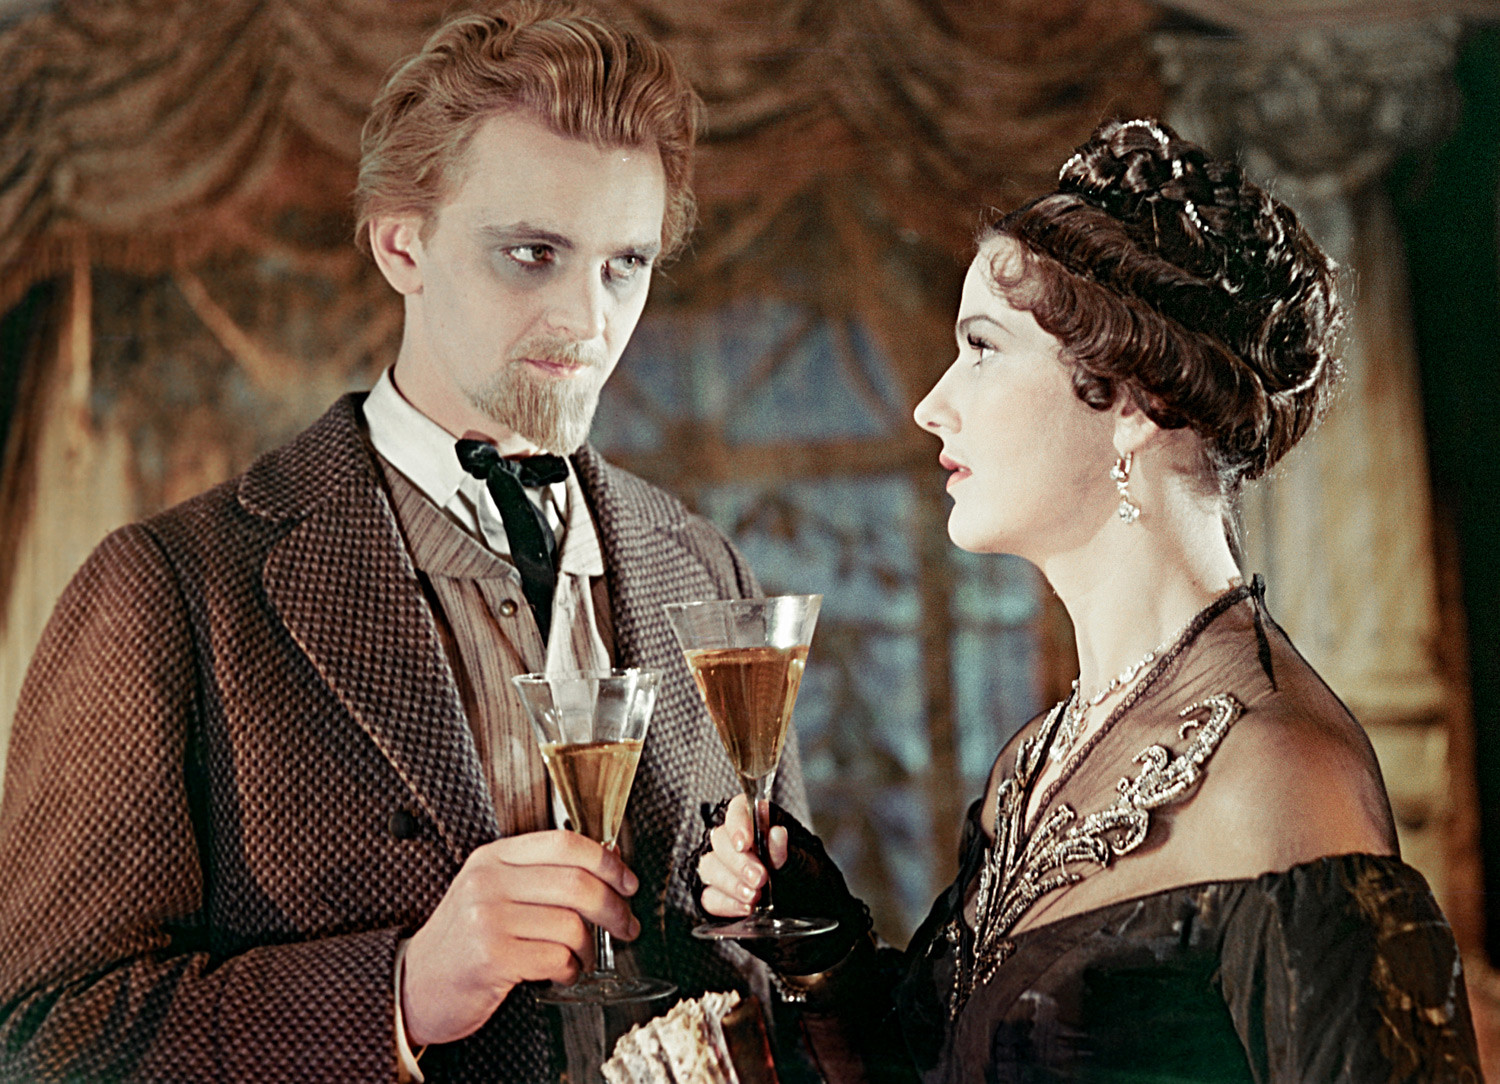 Јуриј Јаковљев како кнез Мишкин и Јулија Борисова као Настасја Филиповна у филму снимљеном 1958.